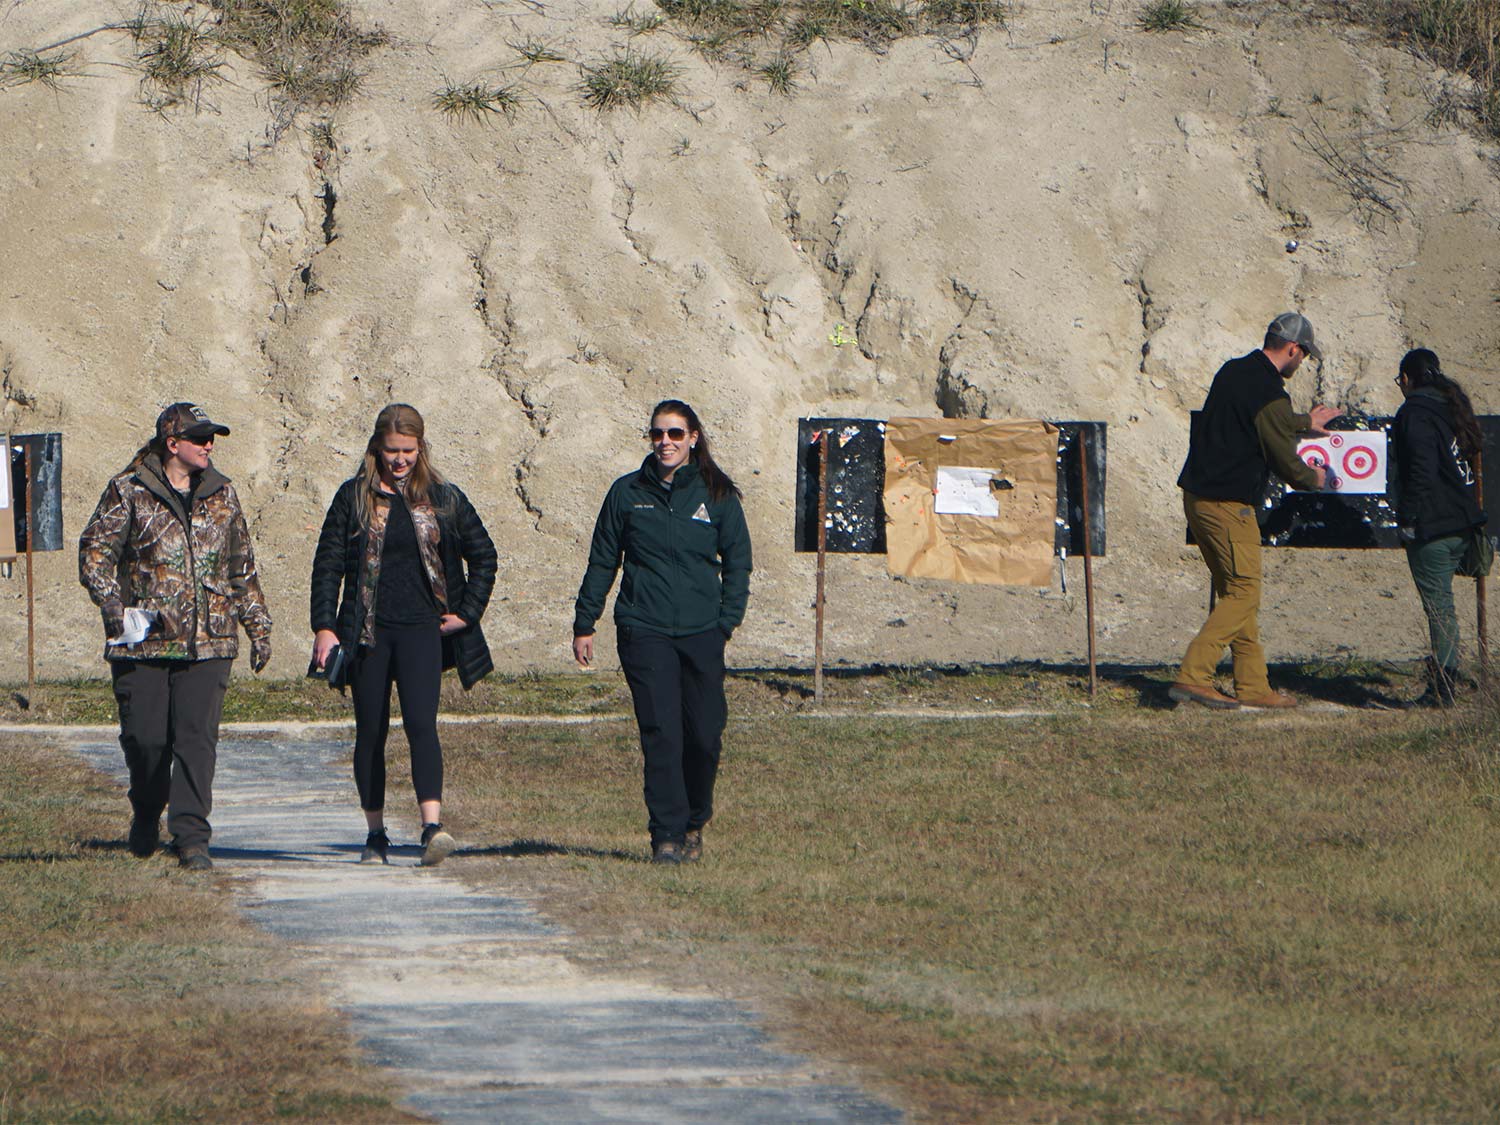 Women walking at a gun range.